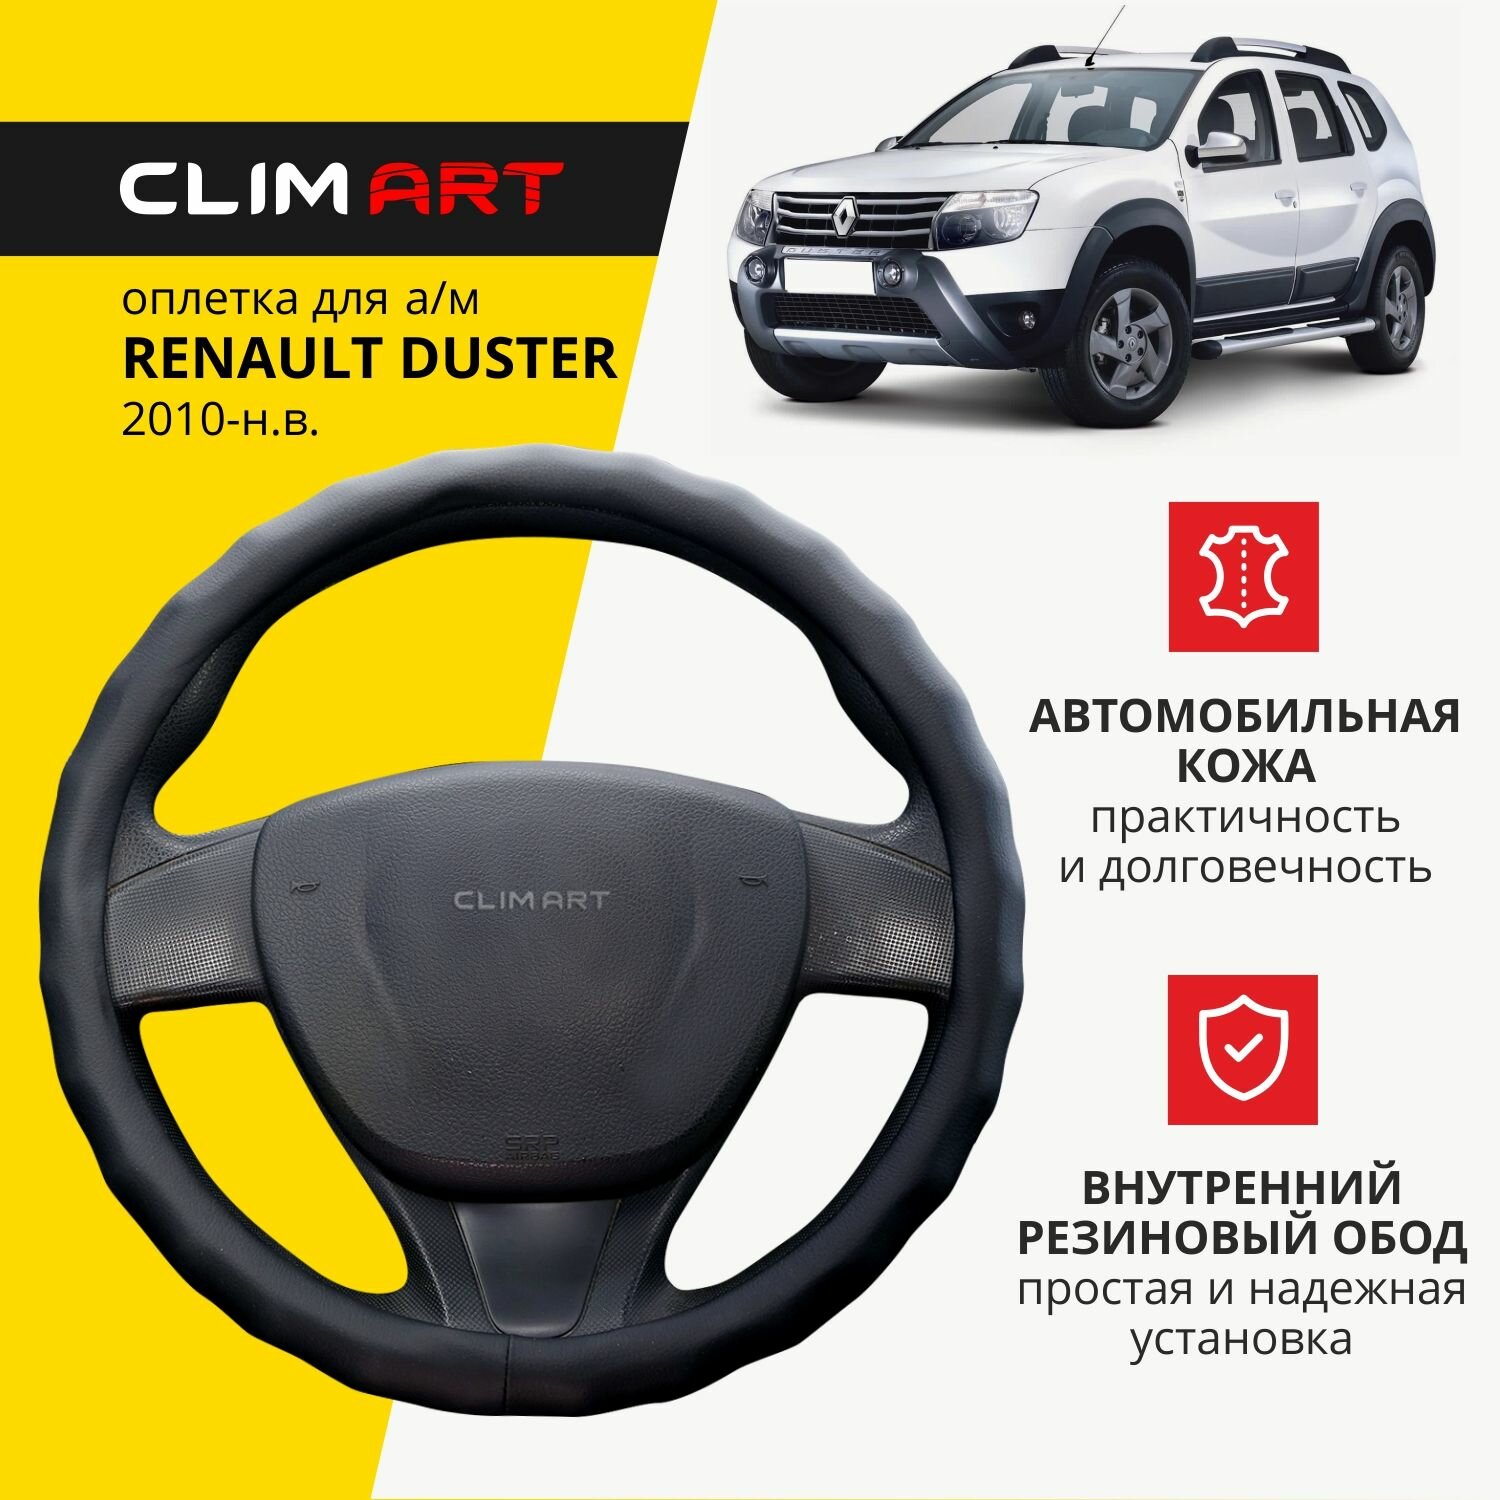 Оплетка модельная CLIM ART для Renault Duster волнистый обод цвет черный